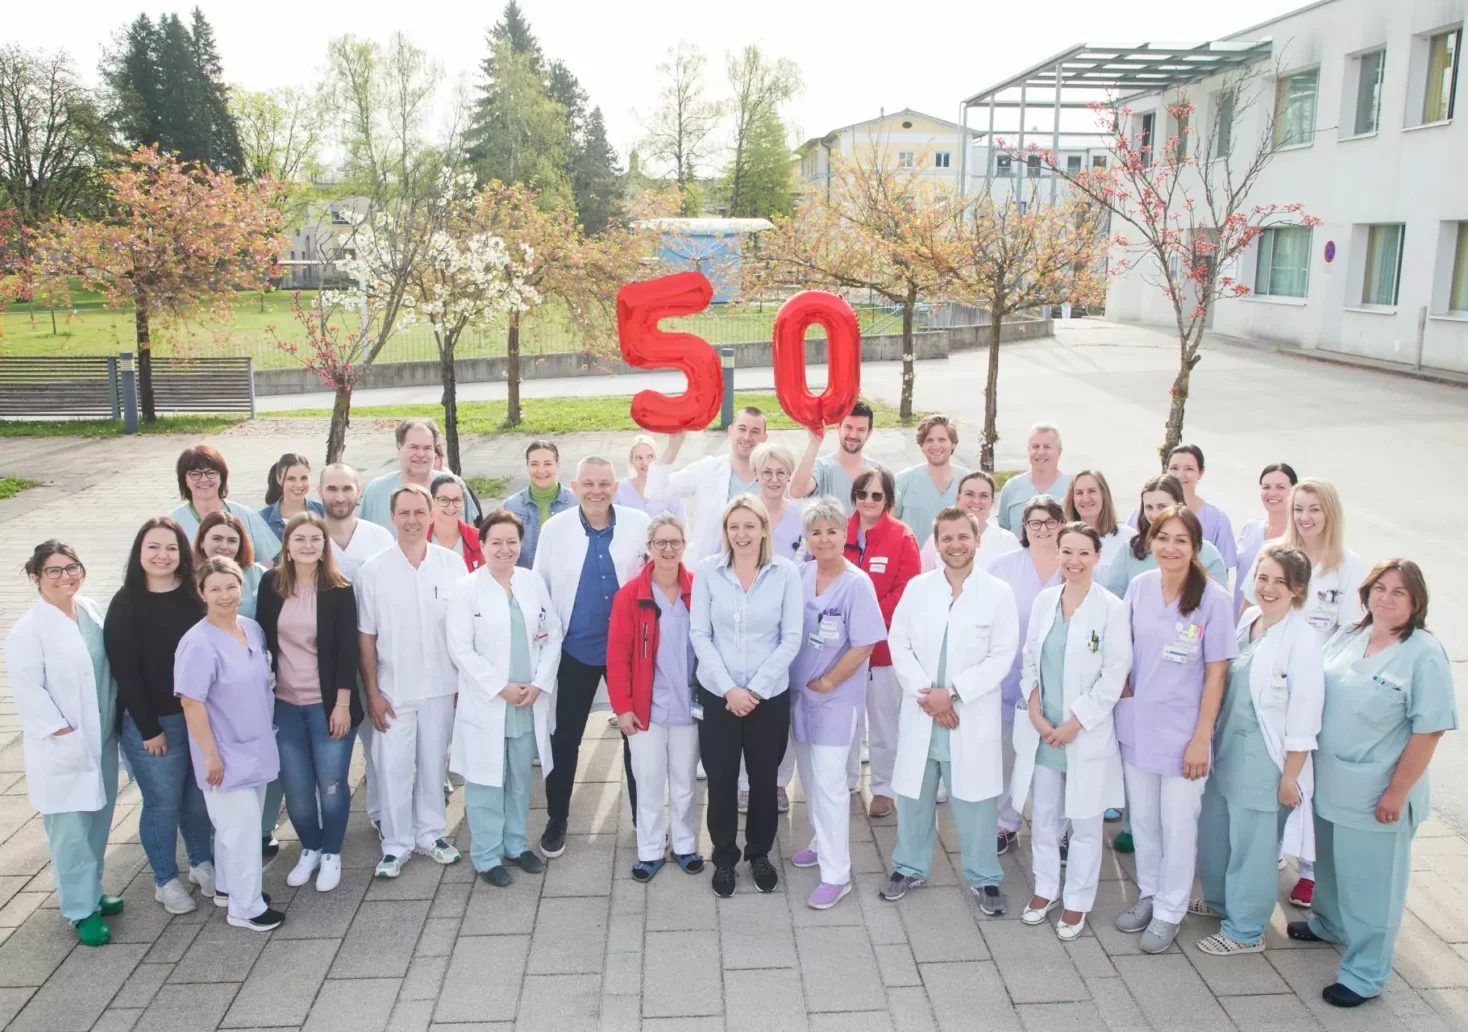 Das Foto auf 5min.at zeigt eine Gruppe von Krankenhausangestellten mit zwei Luftballons.